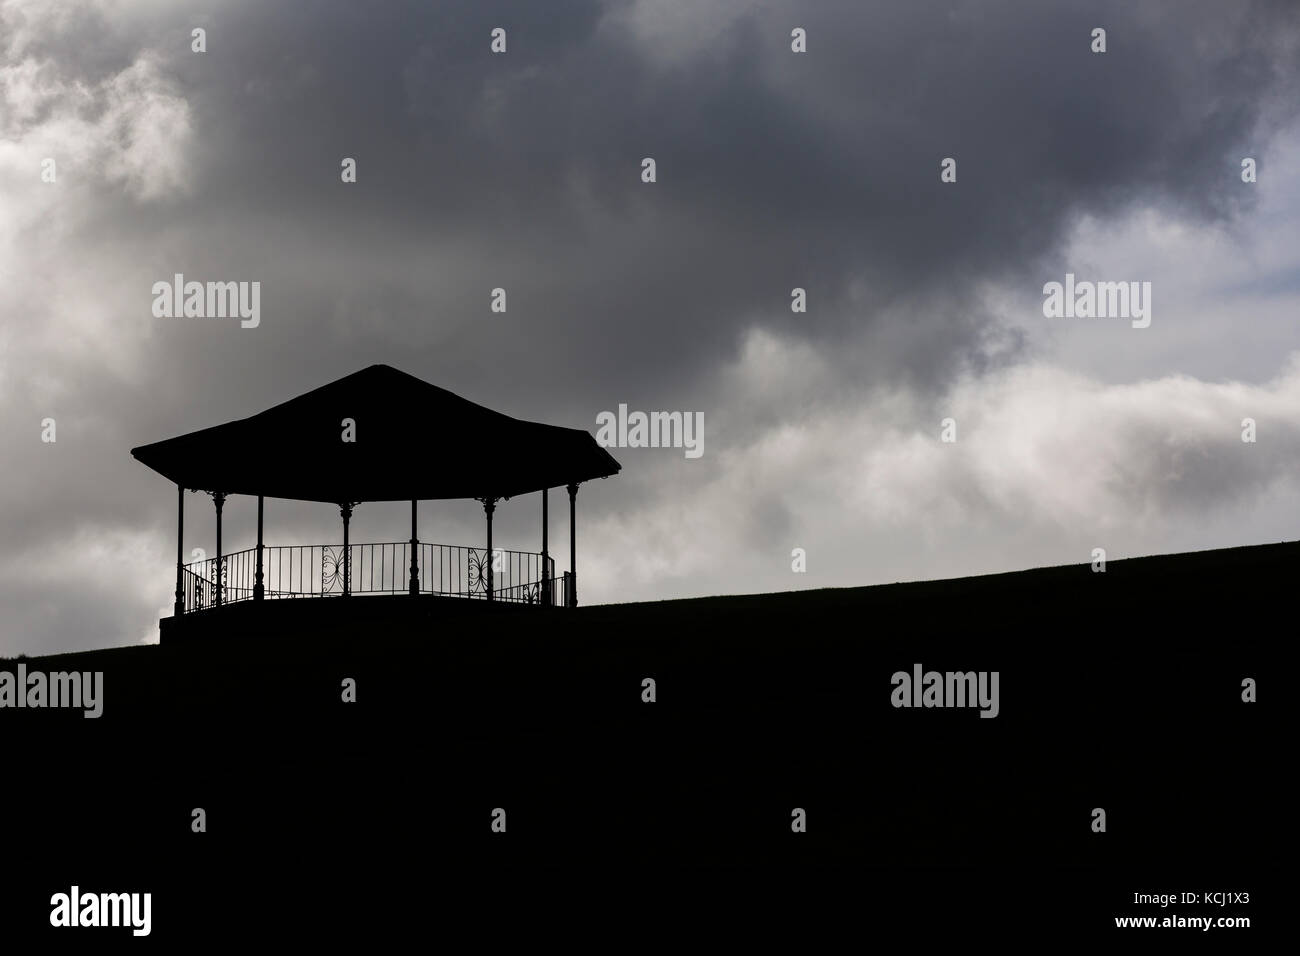 Silueta de quiosco en la cima de la colina contra la oscuridad, Moody nubes en el cielo Foto de stock